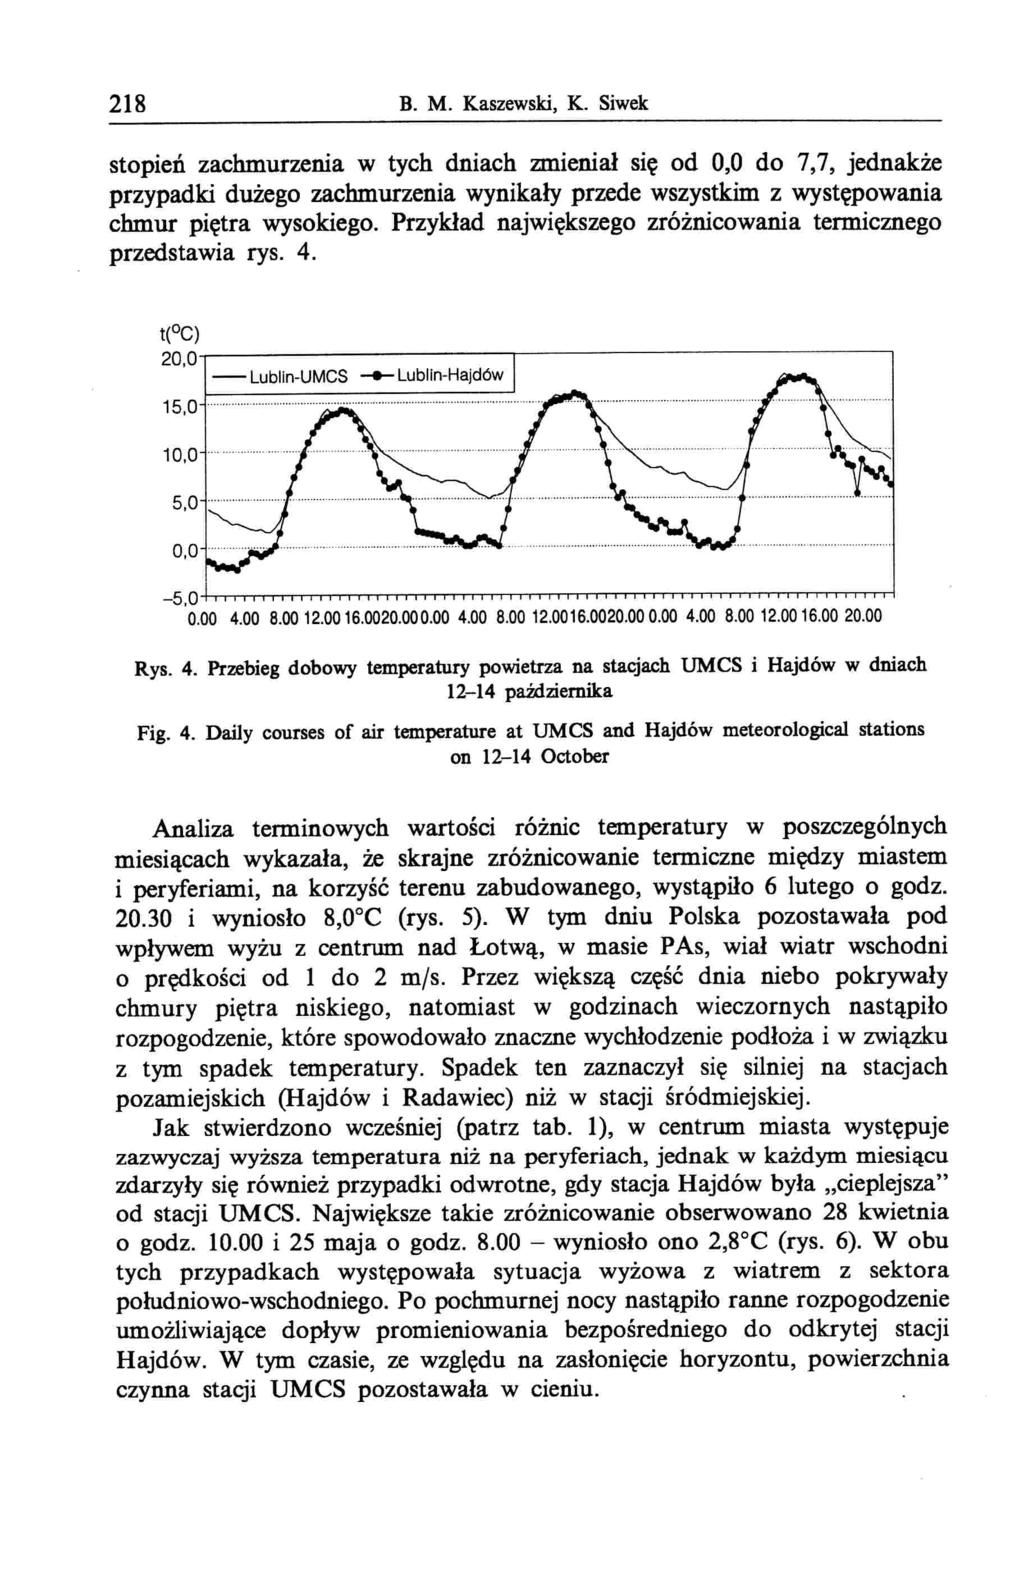 218 B. M. Kaszewski K. Siwek stopień zachmurzenia w tych dniach zmieniał się od 00 do 77 jednakże przypadki dużego zachmurzenia wynikały przede wszystkim z występowania chmur piętra wysokiego.